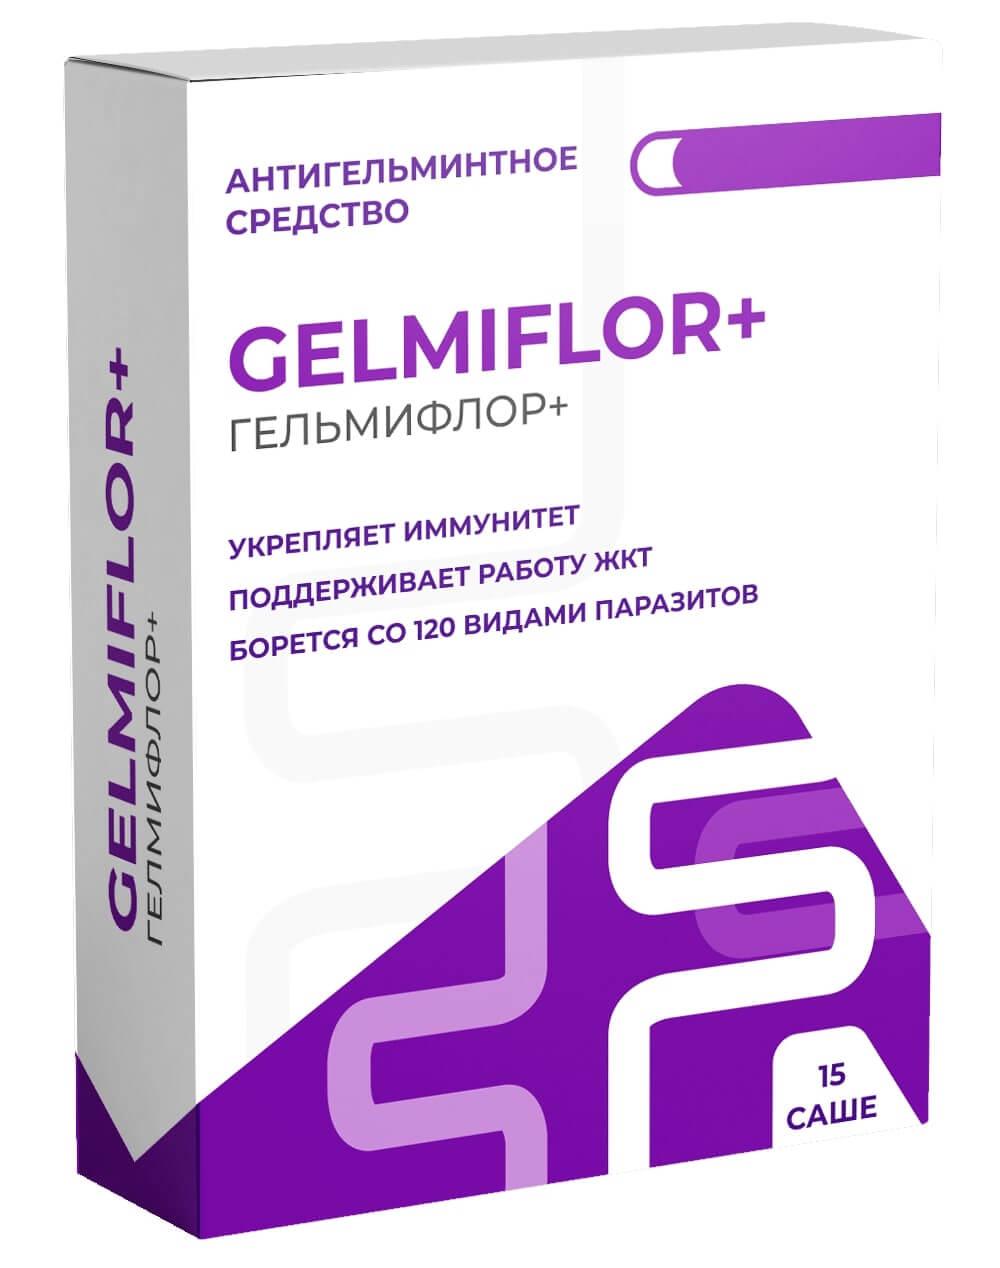 Аптека: гельмифлор в Севастополе